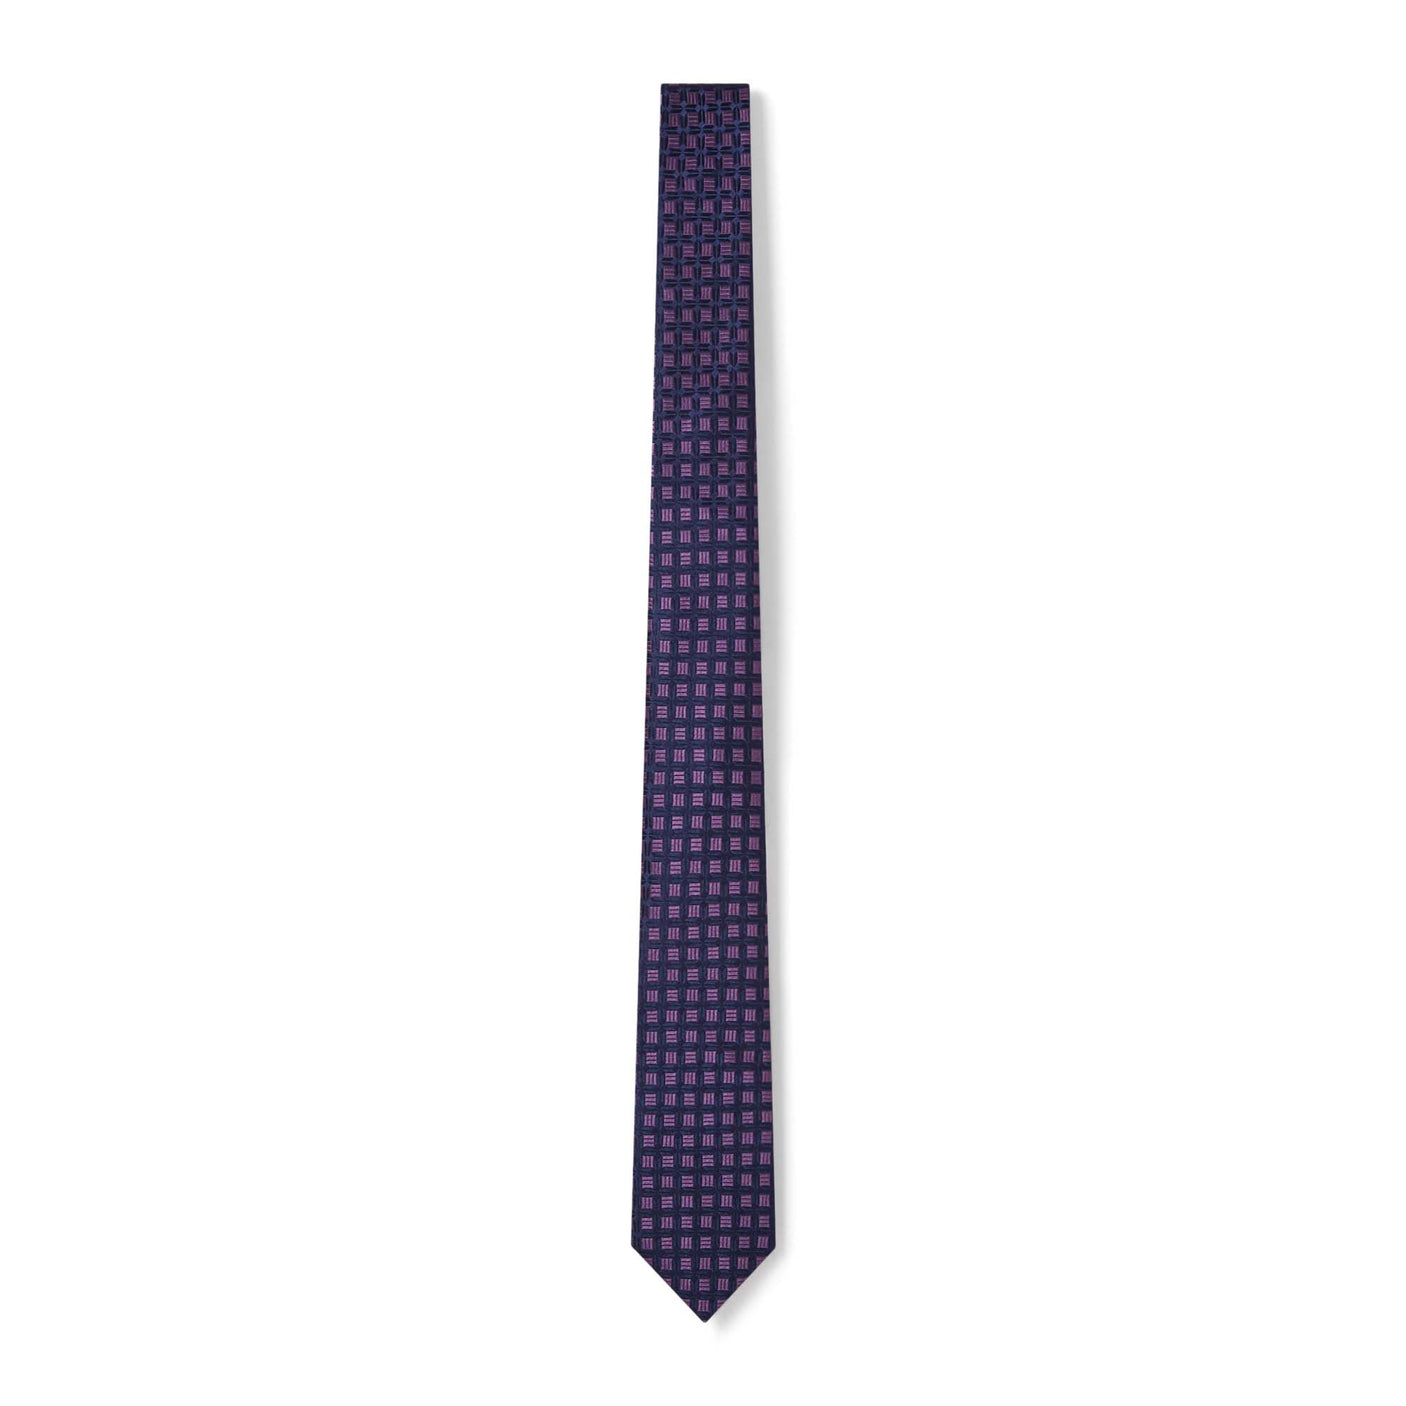 Cravate à carreaux géométriques violet et bleu marine